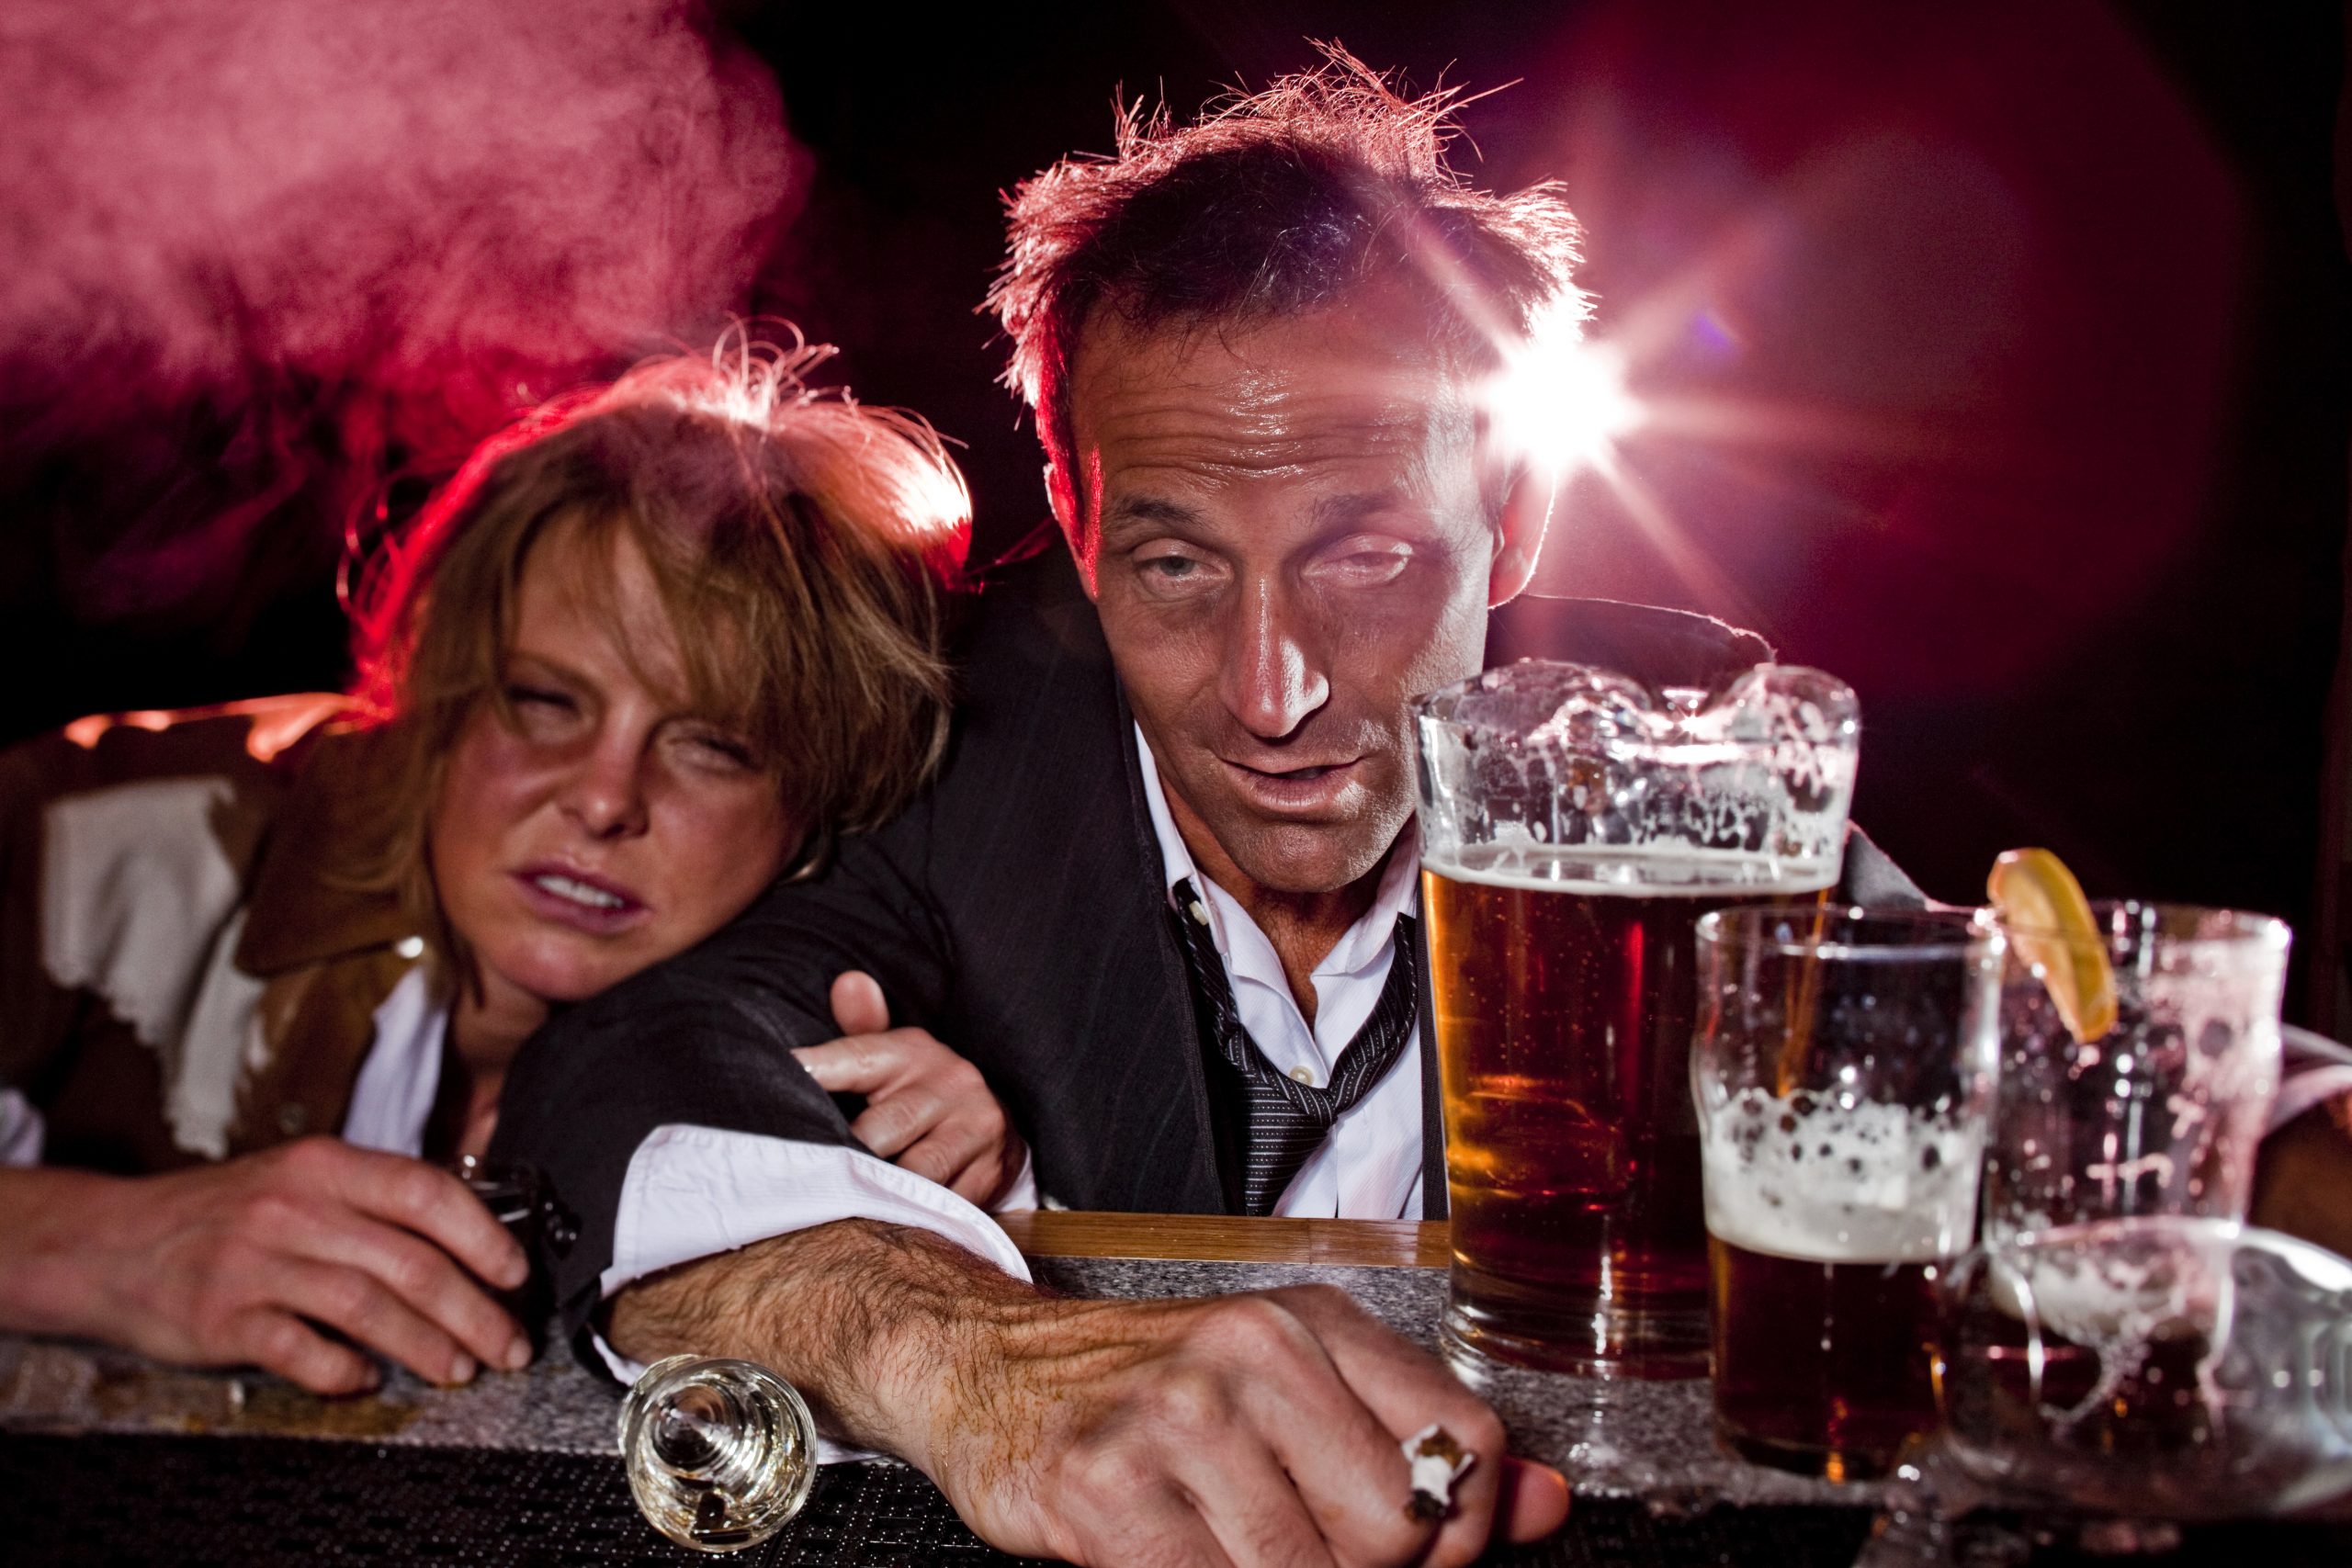 Сценки пьяные. Мужчина и женщина выпивают.